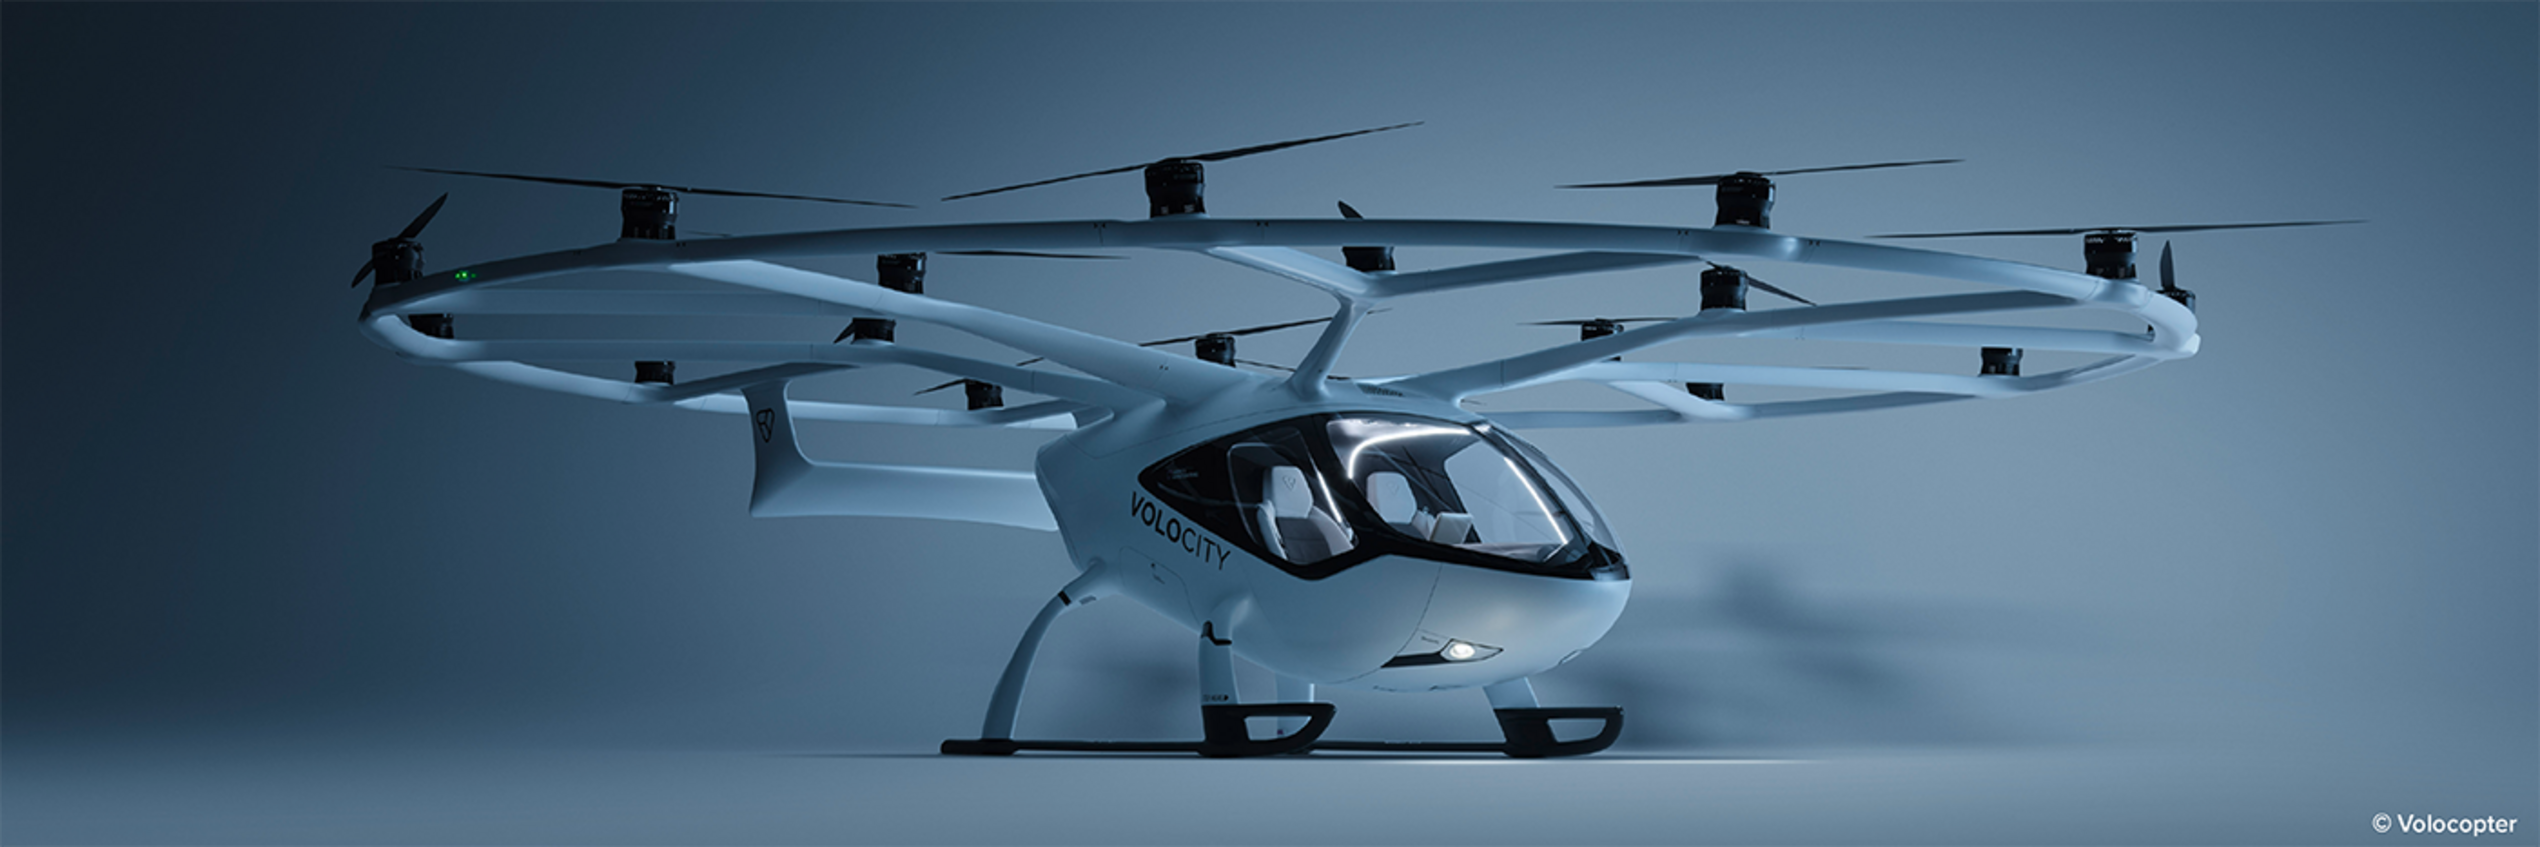 Diehl Aviation baut Zusammenarbeit mit Volocopter für das vollelektrische Flugtaxi VoloCity weiter aus